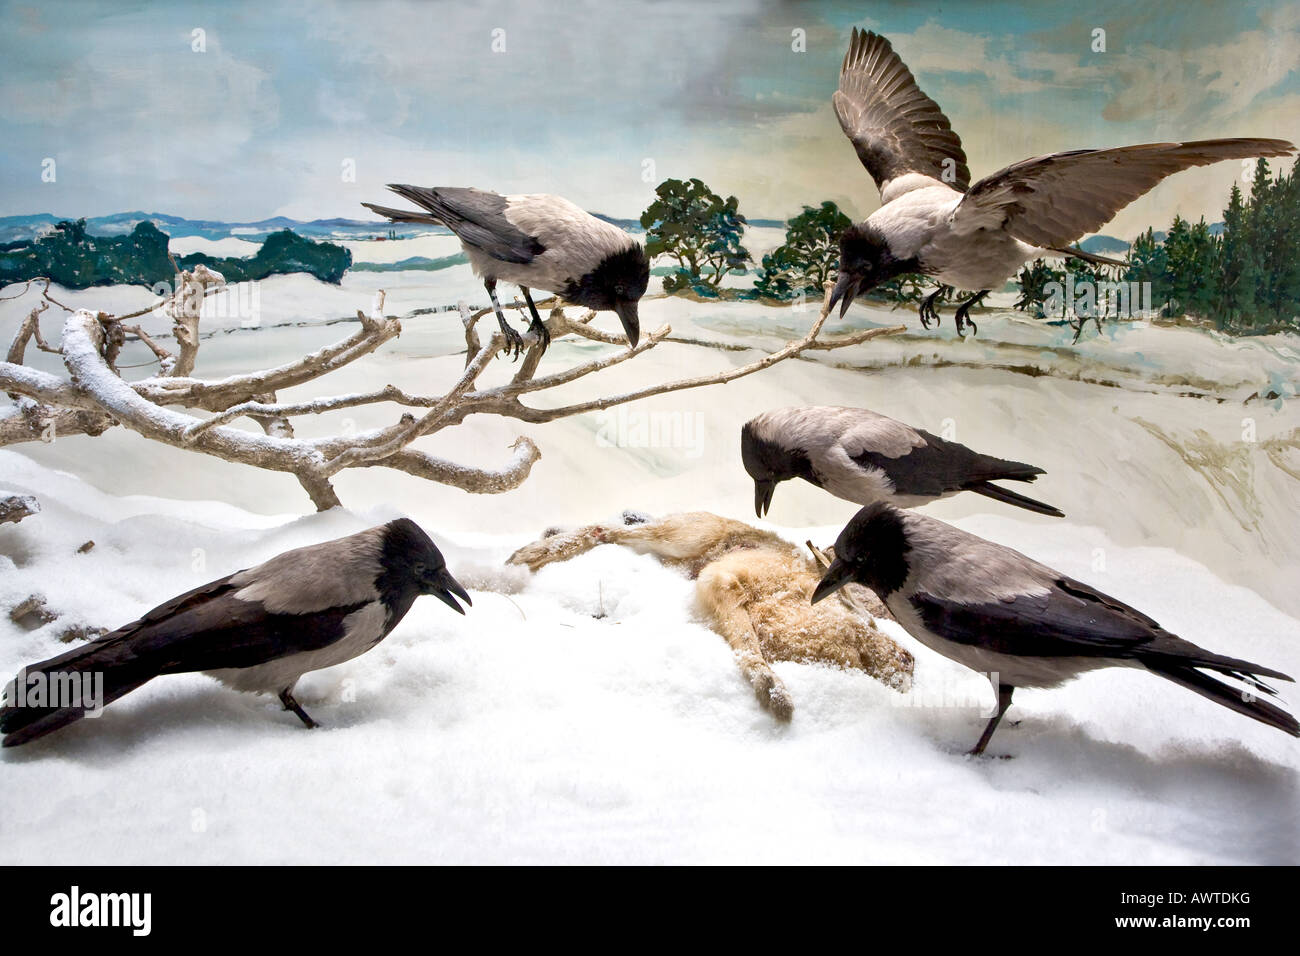 Los cuervos comiendo una liebre muerta Foto de stock